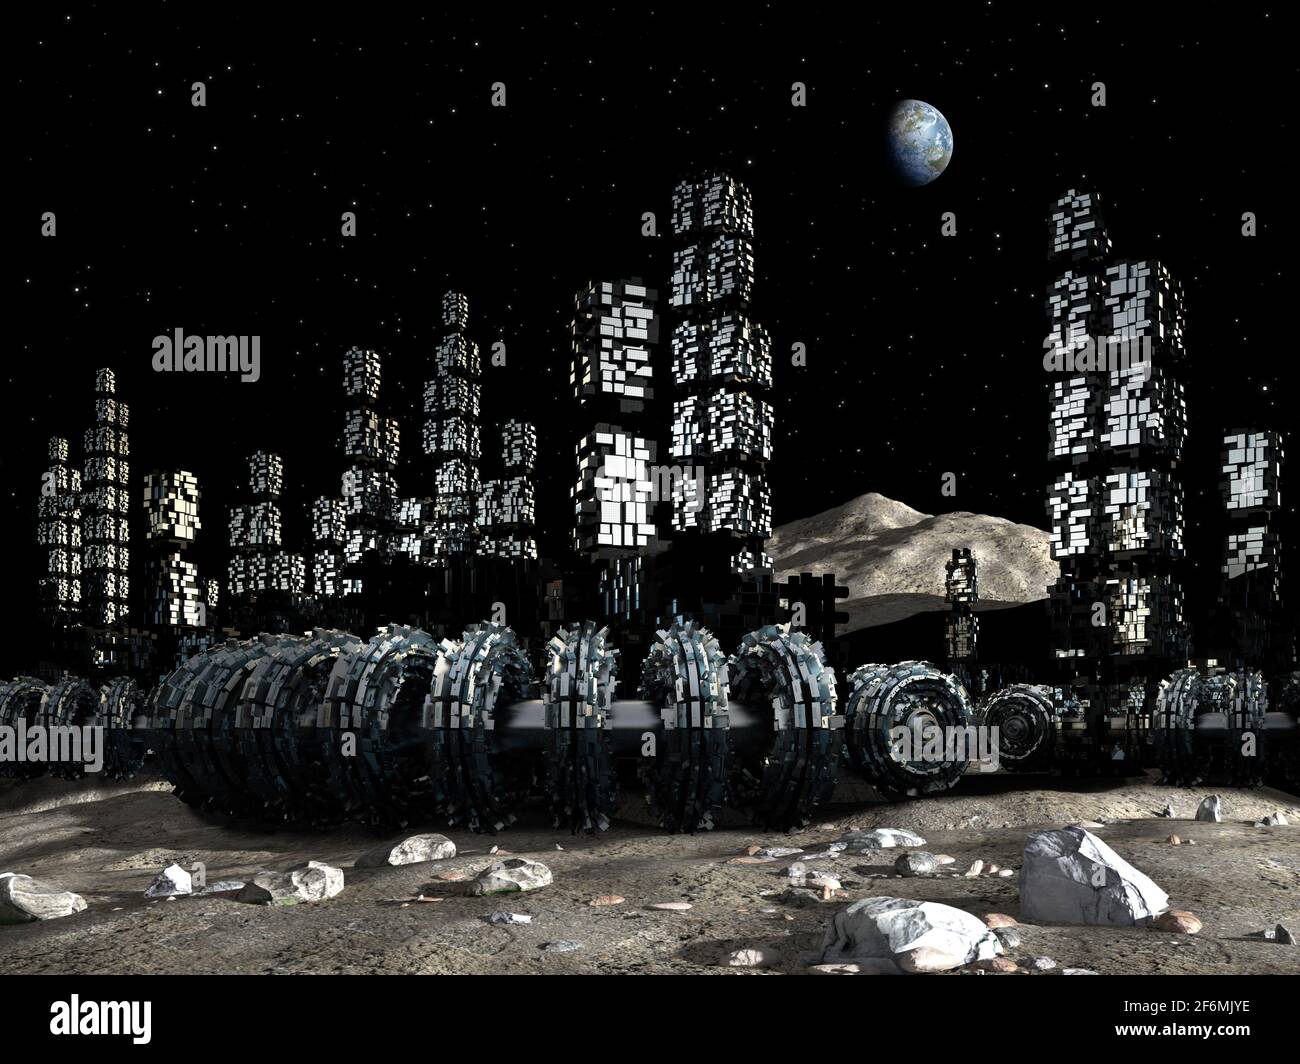 Illustrazione in 3D di una colonia di Luna, con un'architettura industriale, modulare, per fantascienza o esplorazioni spaziali. Foto Stock